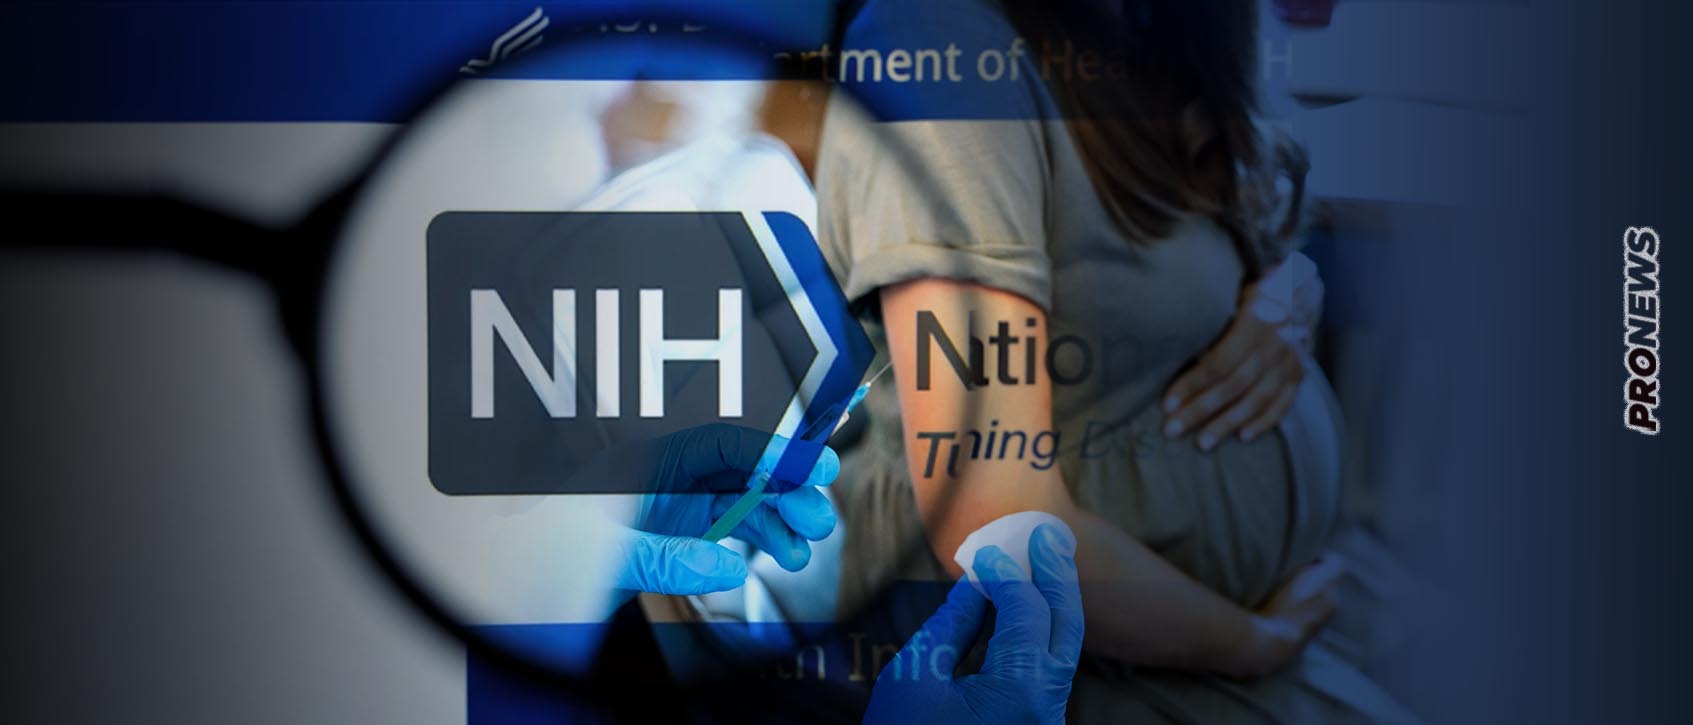 Έρευνα-σοκ από NHI: Τα εμβόλια κατά της Covid-19 προκάλεσαν παρενέργειες στην περίοδο του 40% των γυναικών!